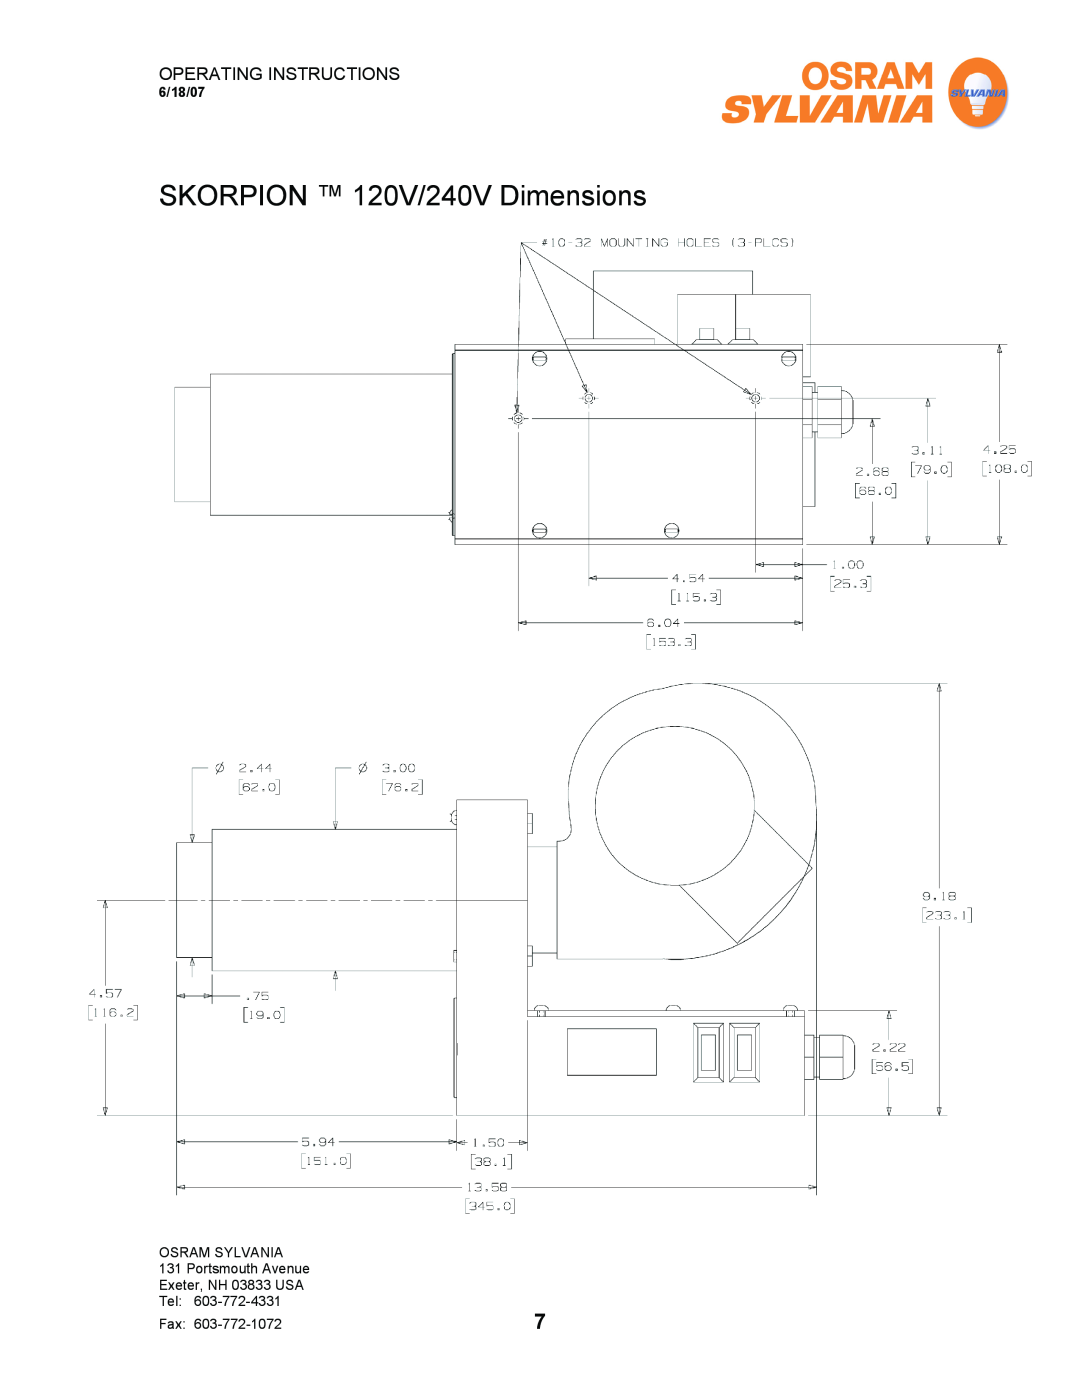 Sylvania F075615 operating instructions SKORPION 120V/240V Dimensions, Operating Instructions, 6/18/07 